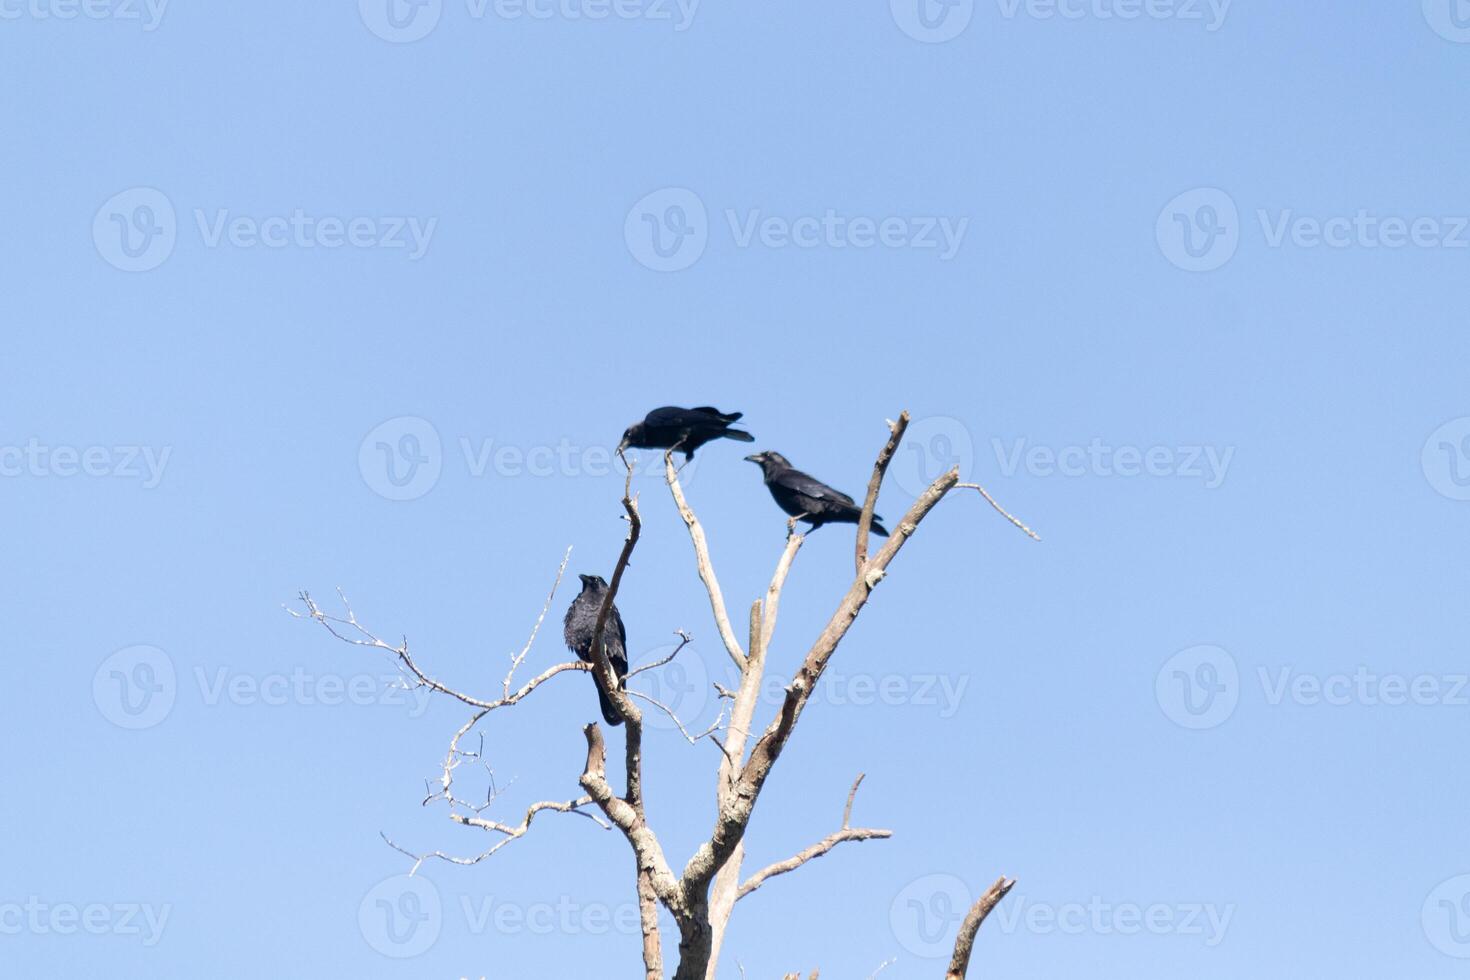 dessa skön gal sat uppflugen atop de träd grenad ser ganska bekväm. de stor svart fåglar vanligtvis stanna kvar tillsammans i deras mörda. de falla lövverk kan vara sett Allt runt om. foto